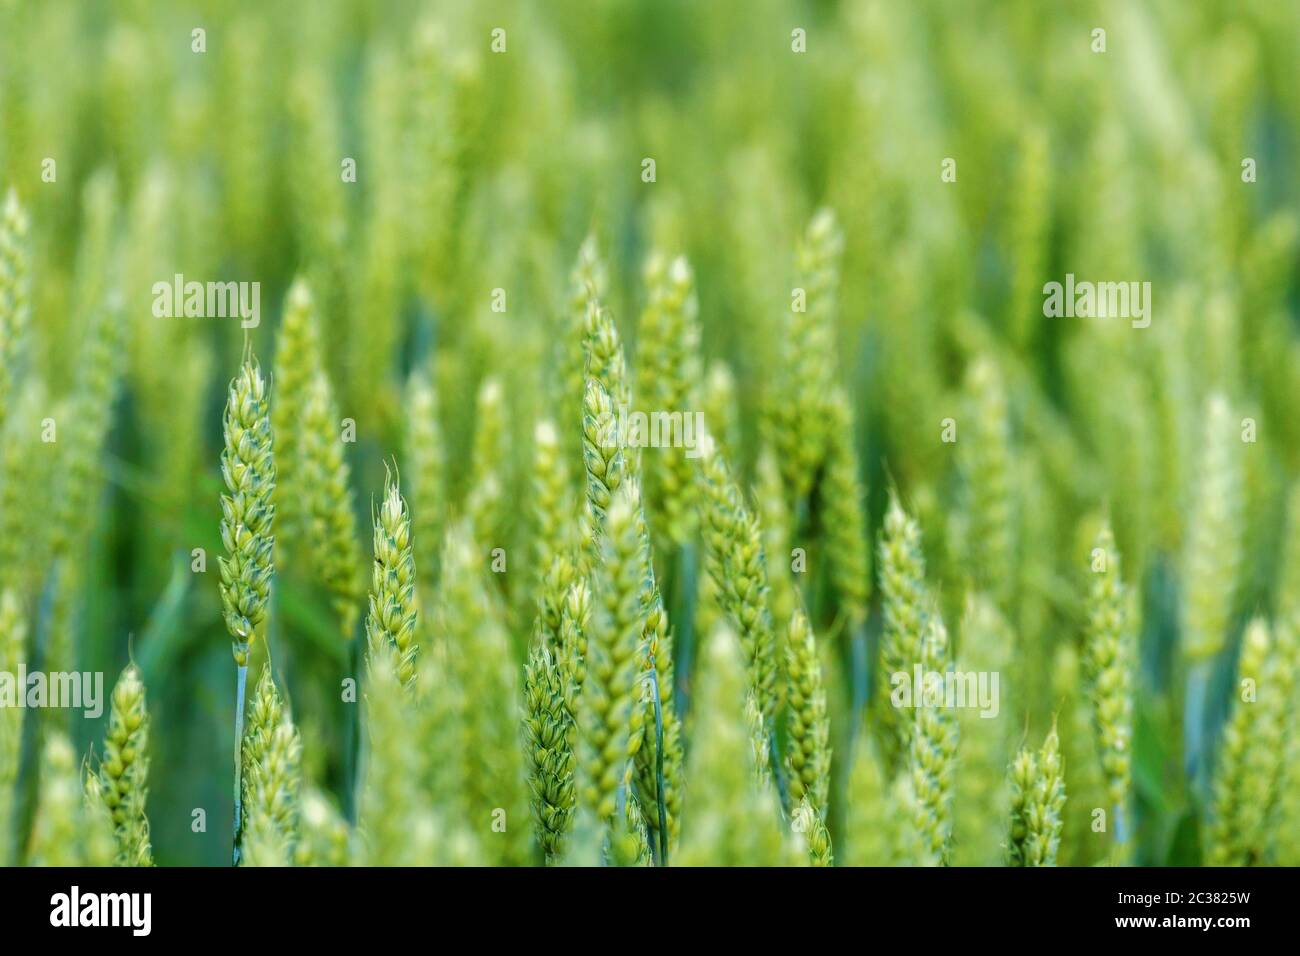 Les jeunes plants de blé, blé vert poussant dans un champ Banque D'Images